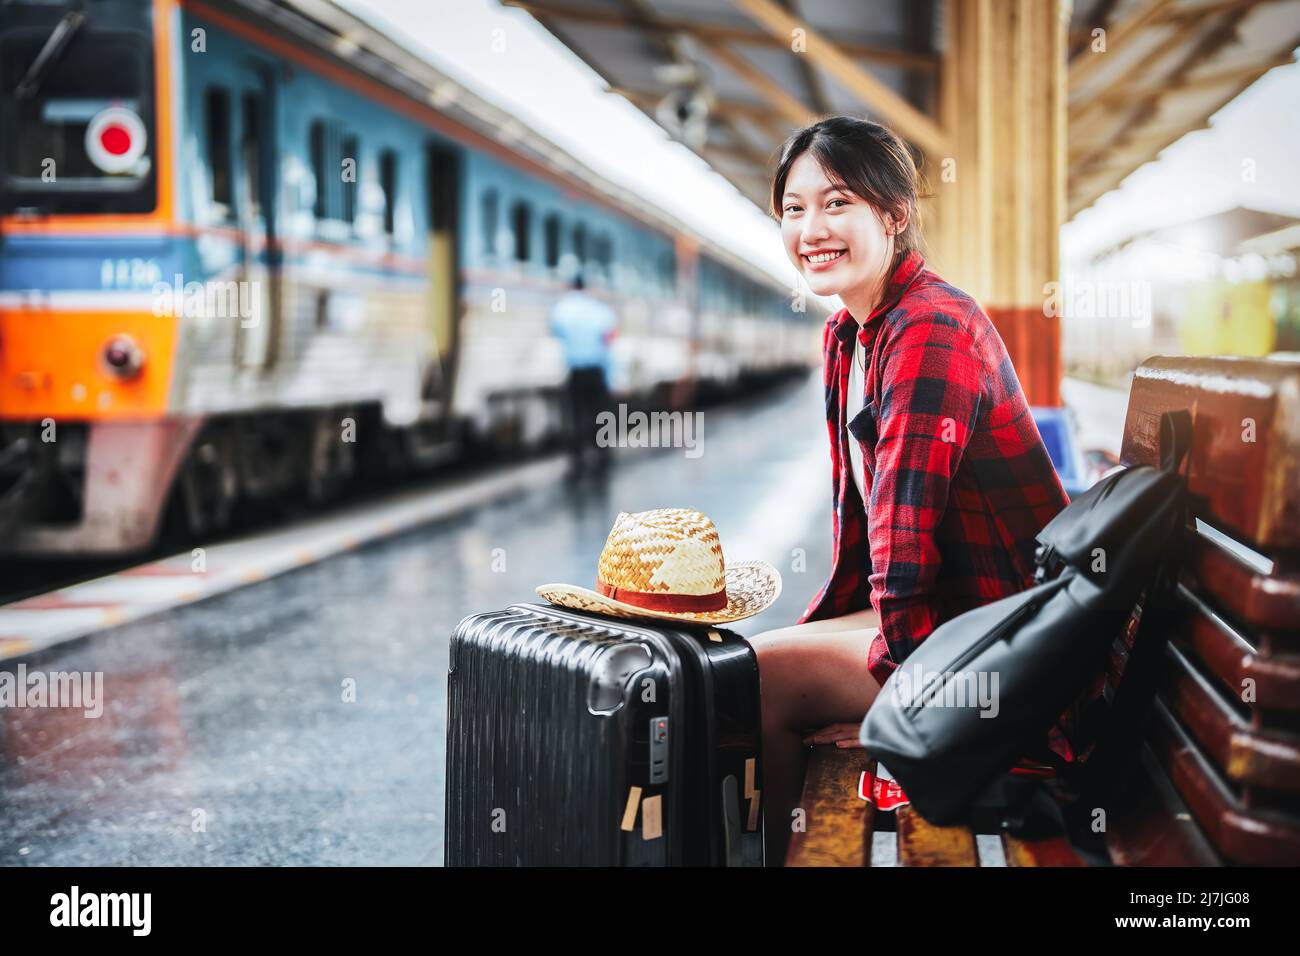 Estate, relax, vacanza, viaggio, ritratto di simpatica ragazza asiatica che mostra il sorriso e l'attesa alla stazione ferroviaria per un viaggio estivo. Foto Stock